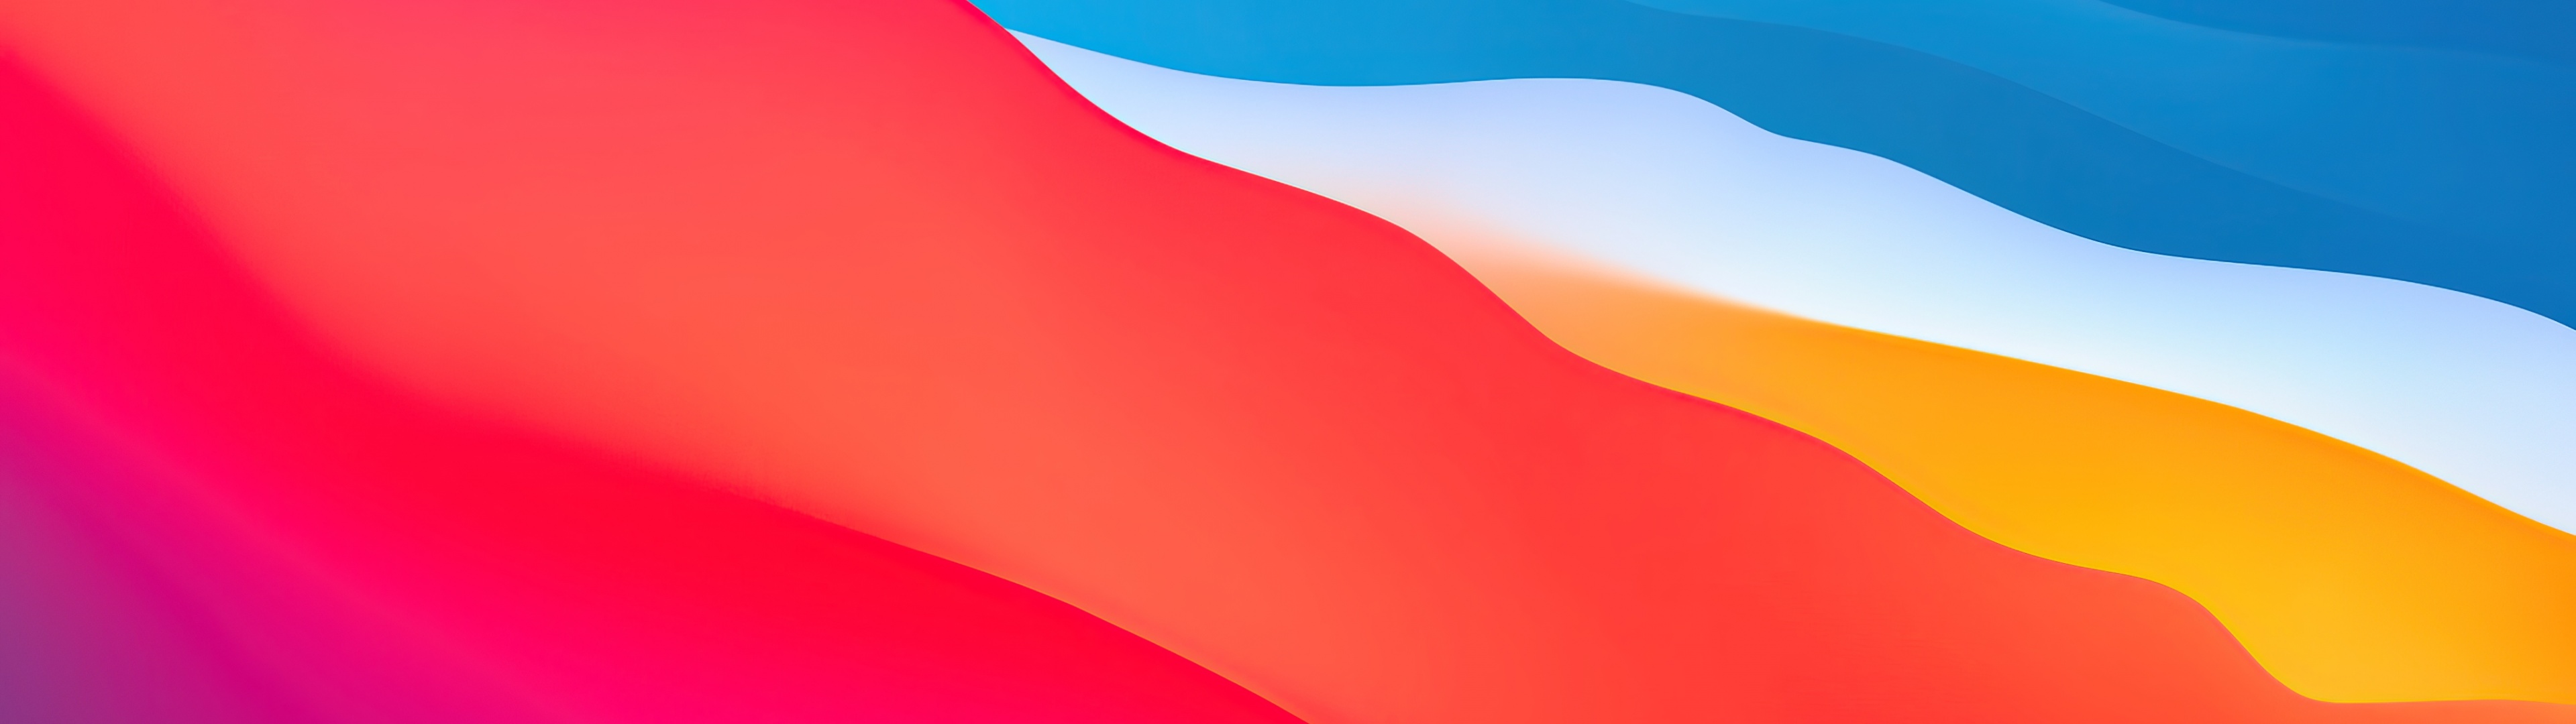 Hãy cập nhật cho mình hình nền theo phong cách mới nhất: macOS Big Sur. Những hình ảnh gradient wallpaper 3840x1080 với độ chuyển động màu sắc sẽ khiến cho công việc của bạn thêm phần sinh động và năng động. Với sự kết hợp hoàn hảo giữa Lớp và Chất lỏng, đây chắc chắn là lựa chọn thịnh hành nhất.